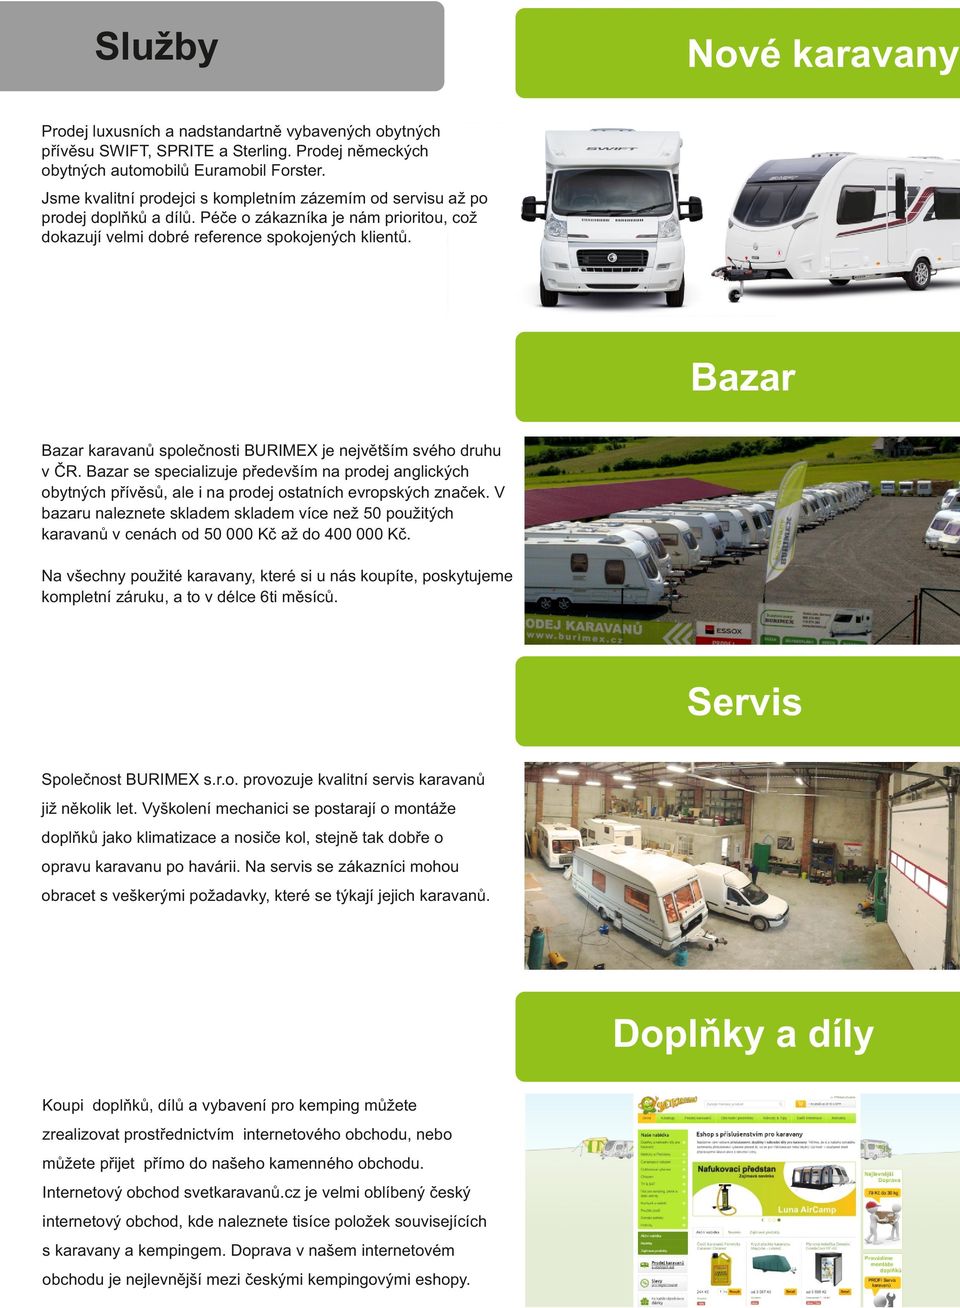 Bazar Bazar karavanů společnosti BURIMEX je největším svého druhu v ČR. Bazar se specializuje především na prodej anglických obytných přívěsů, ale i na prodej ostatních evropských značek.